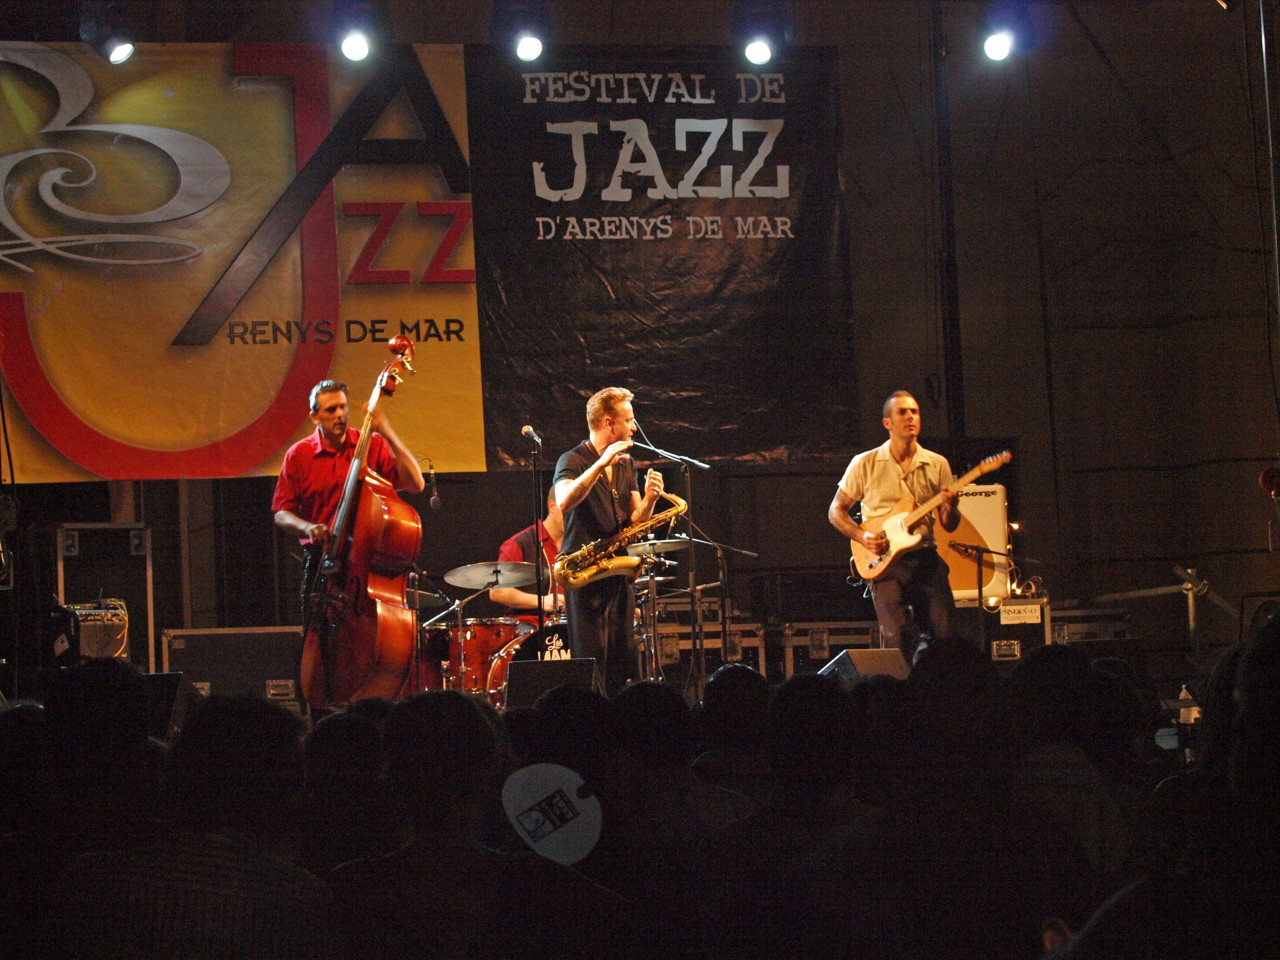 Imatges del 21è Festival de Jazz d'Arenys de Mar - 2012 - Foto 72547473